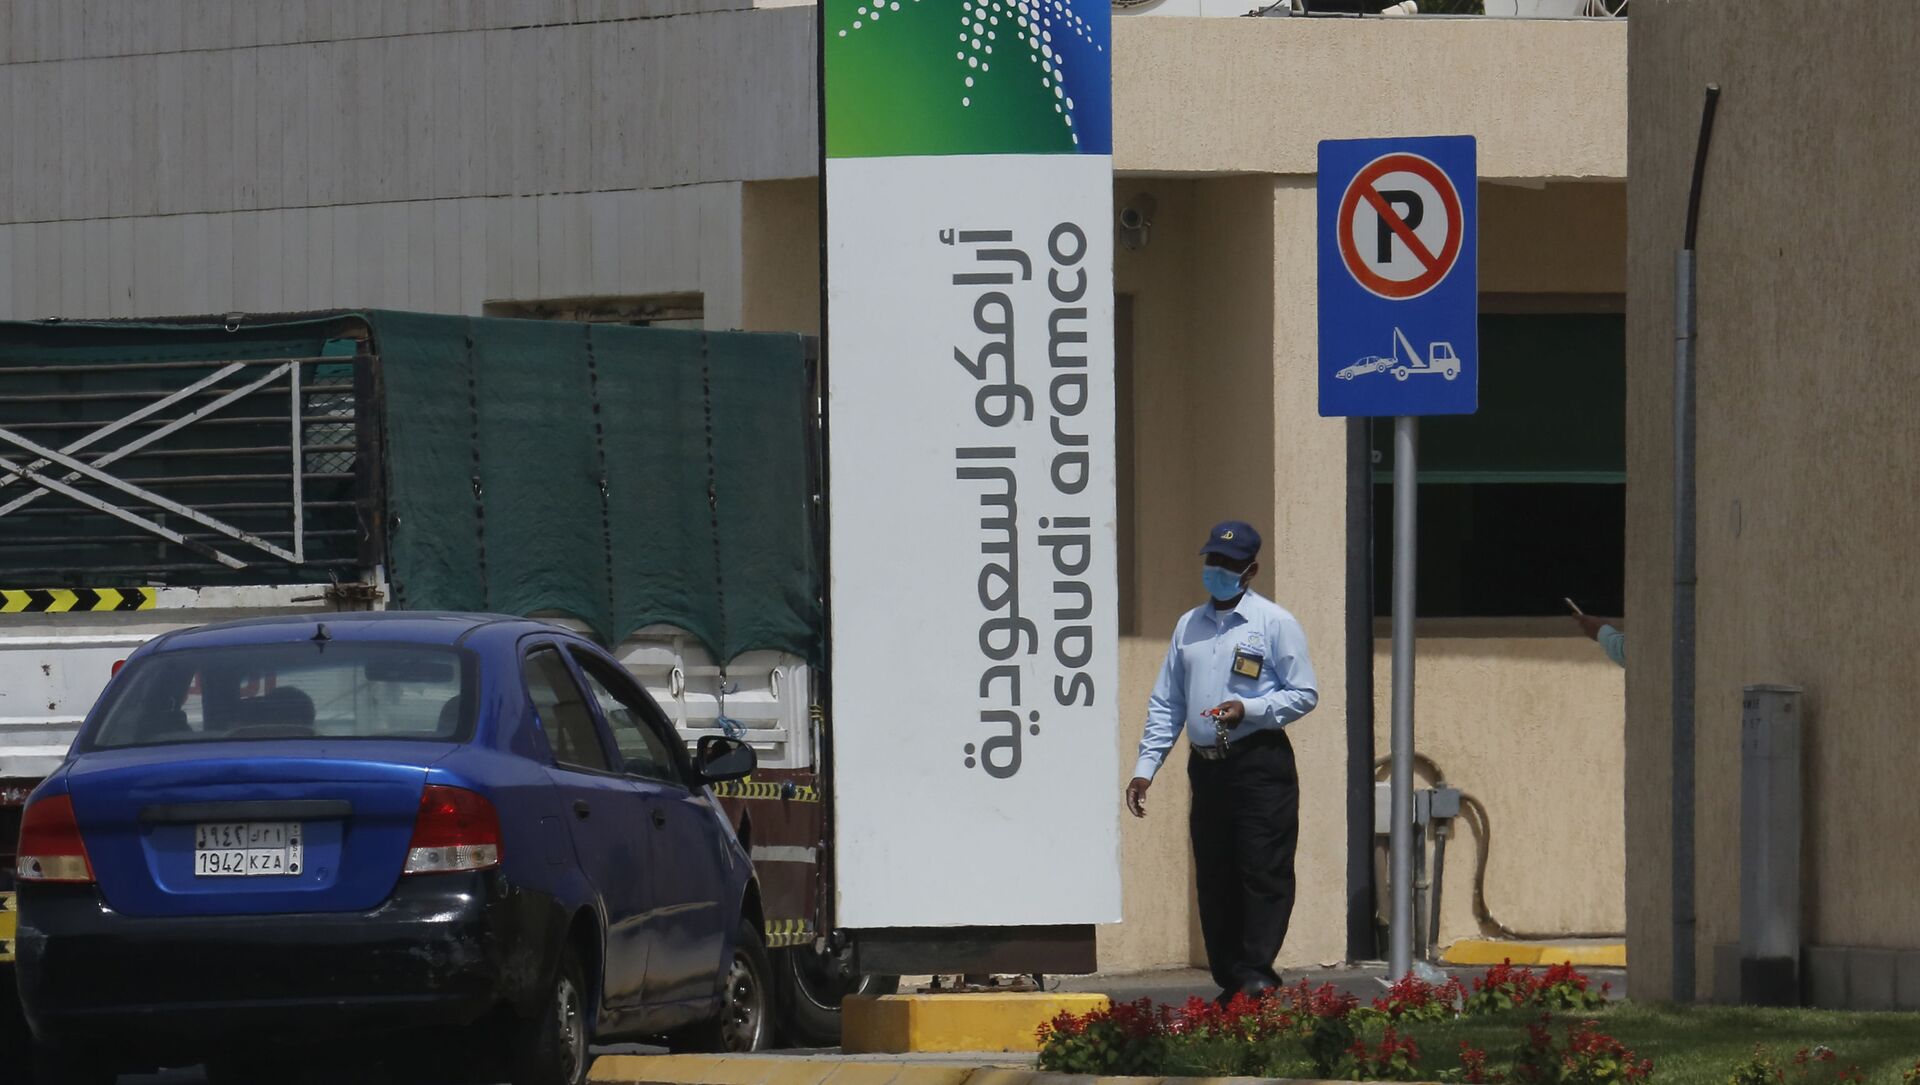 Сотрудник службы безопасности в маске проверяет автомобиль, въезжающий на территорию комплекса Saudi Aramco в Джидде, Саудовская Аравия, в понедельник, 9 марта 2020 года - Sputnik Azərbaycan, 1920, 11.06.2021